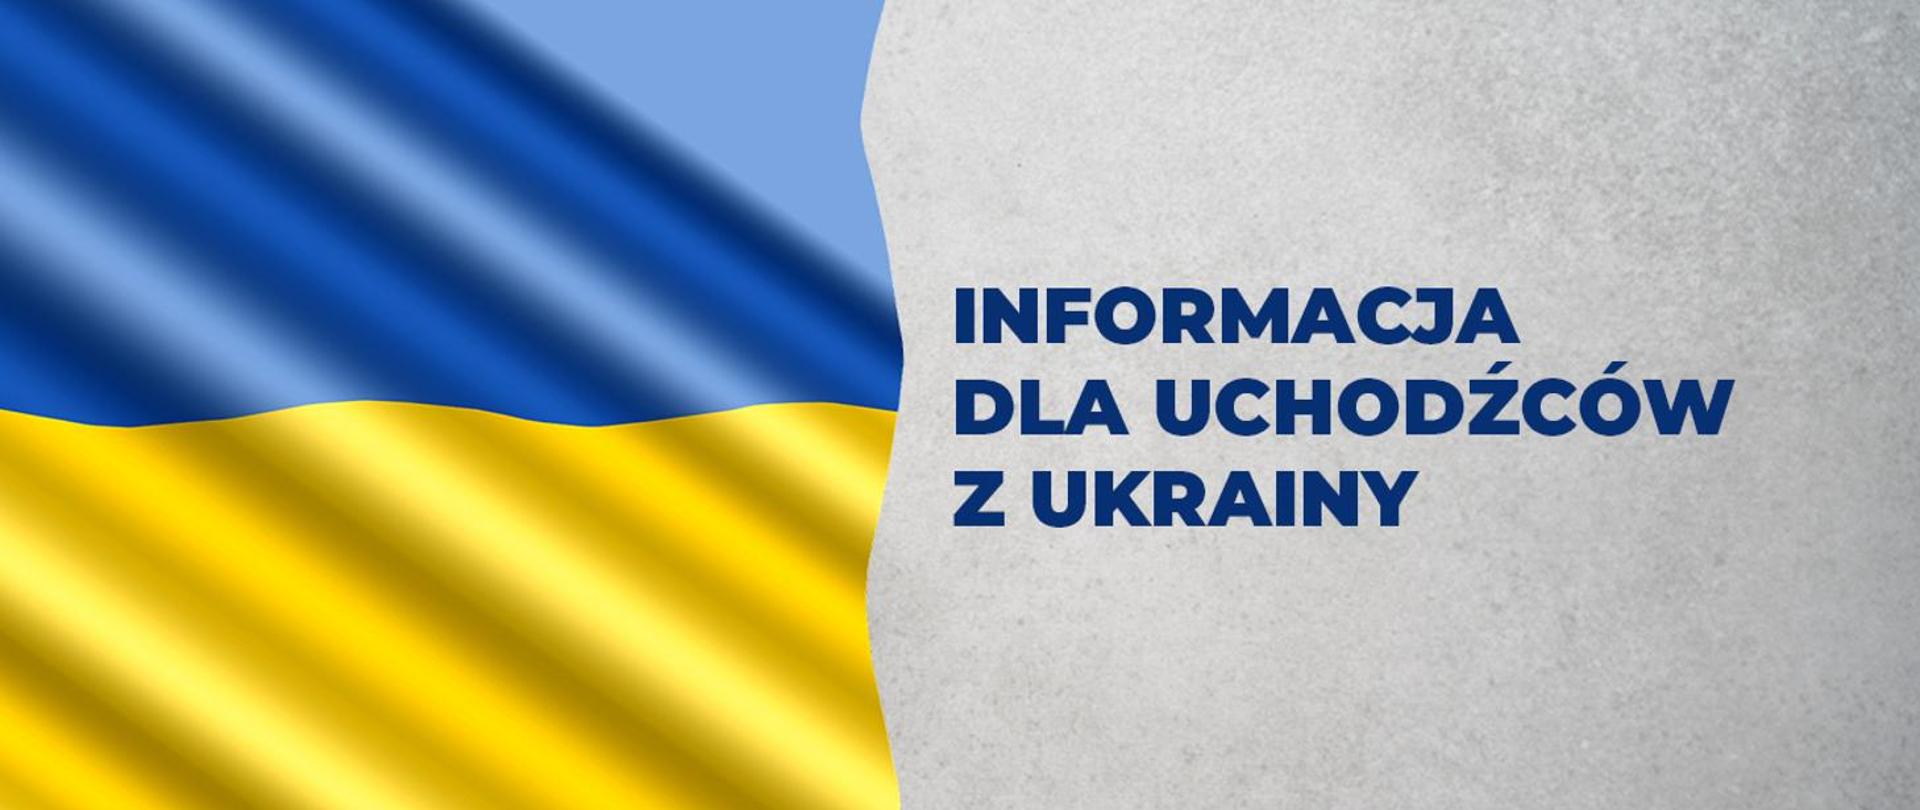 Flaga Ukrainy i tytuł artykułu